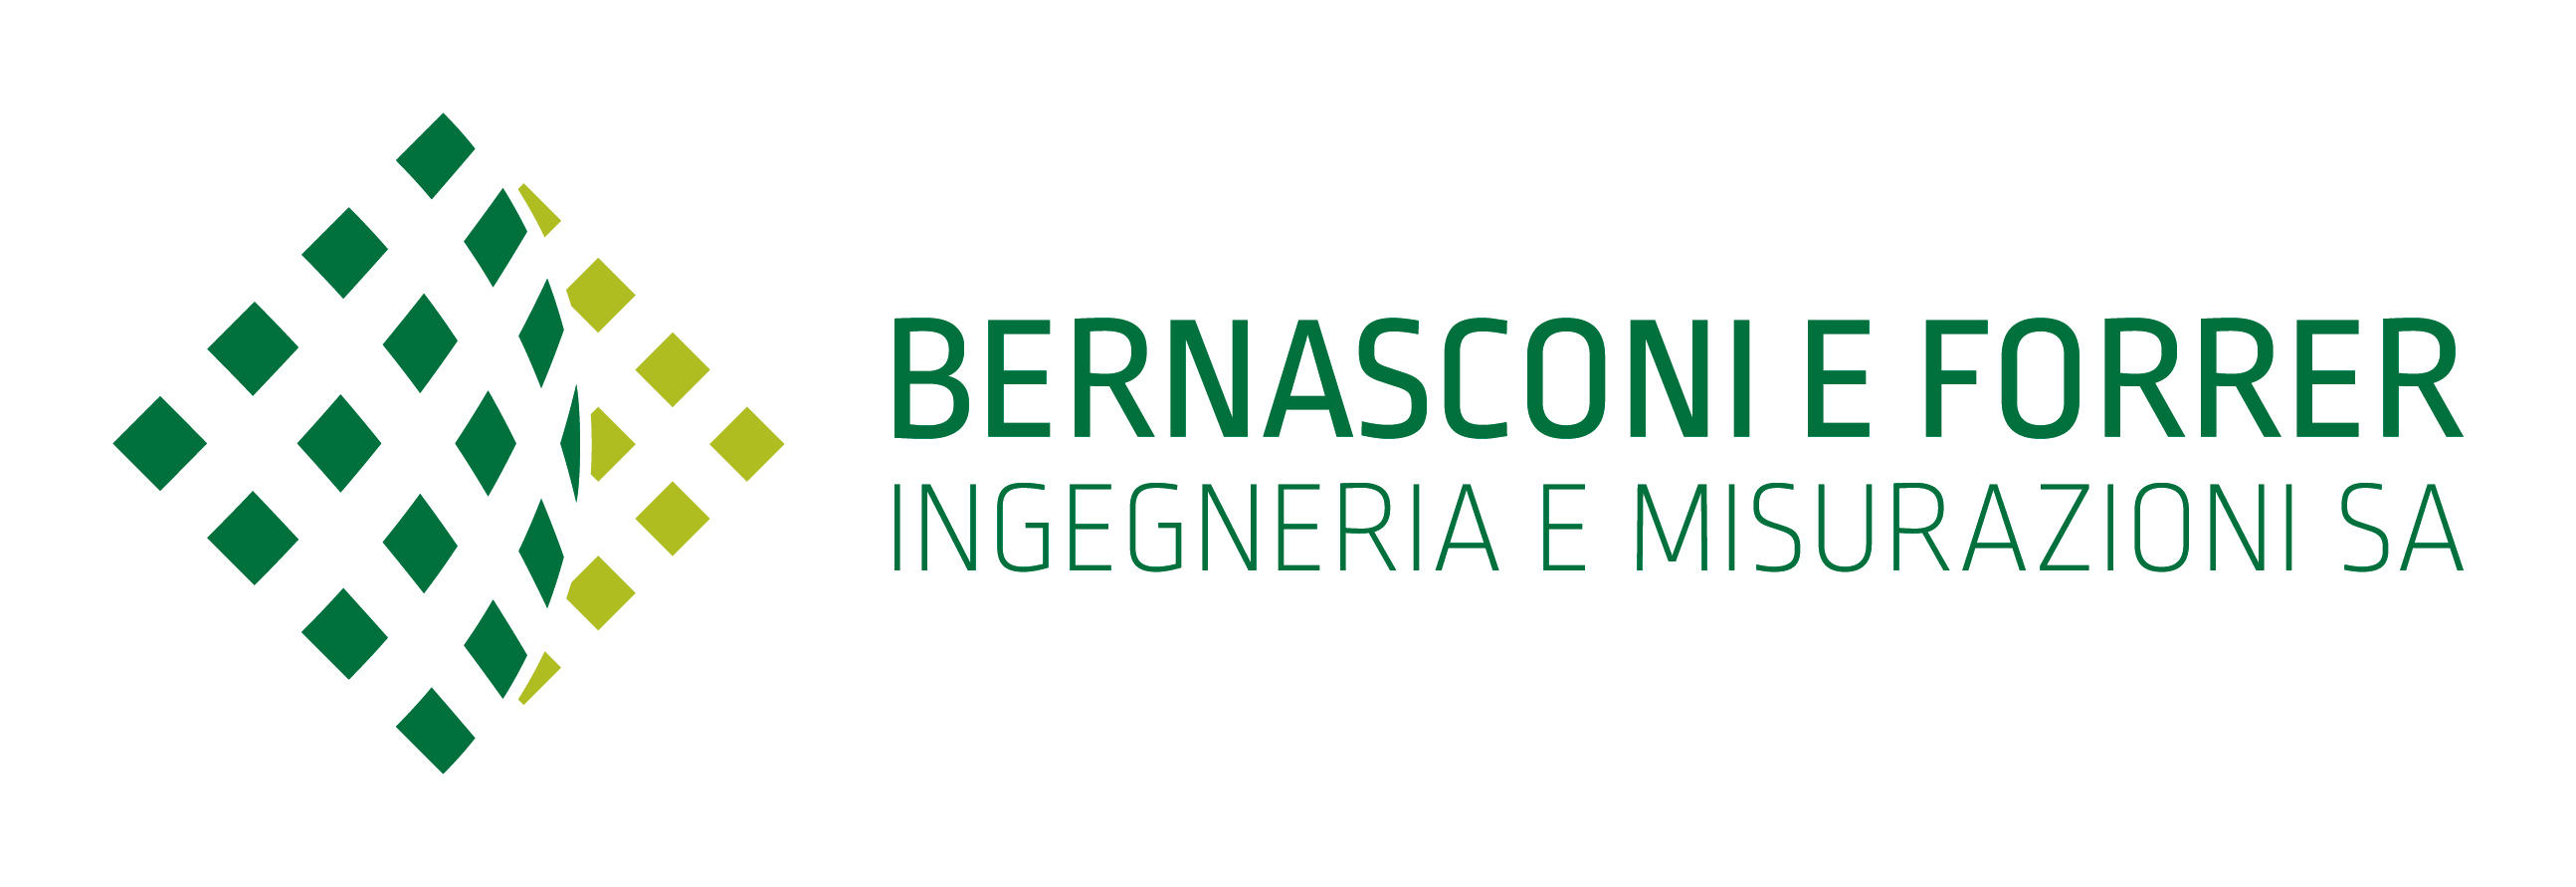 Bilder Bernasconi e Forrer ingegneria e misurazioni SA